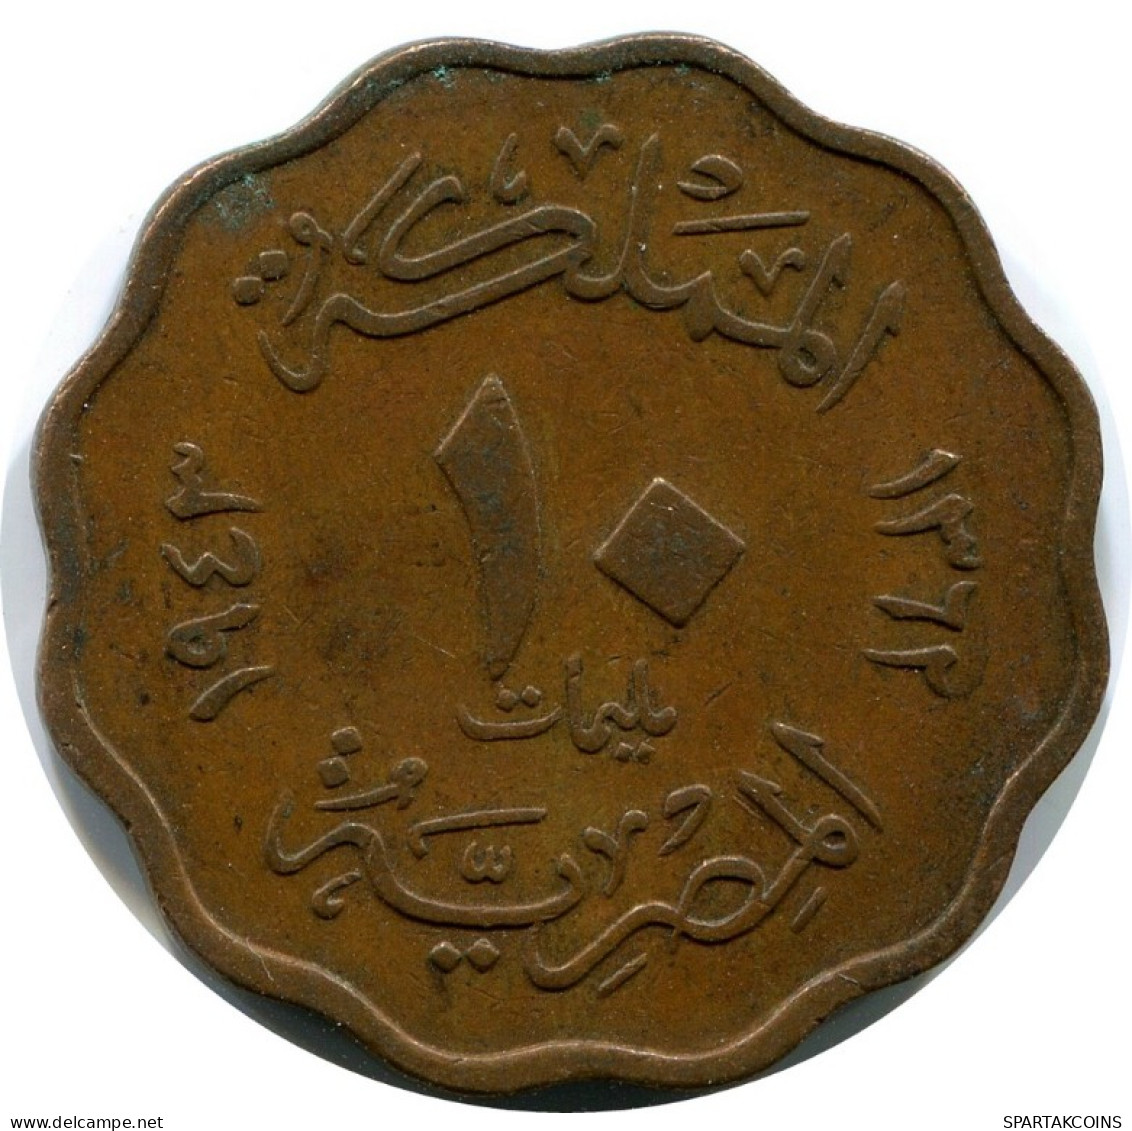 10 MILLIEMES 1943 ÄGYPTEN EGYPT Islamisch Münze #AK028.D.A - Egitto